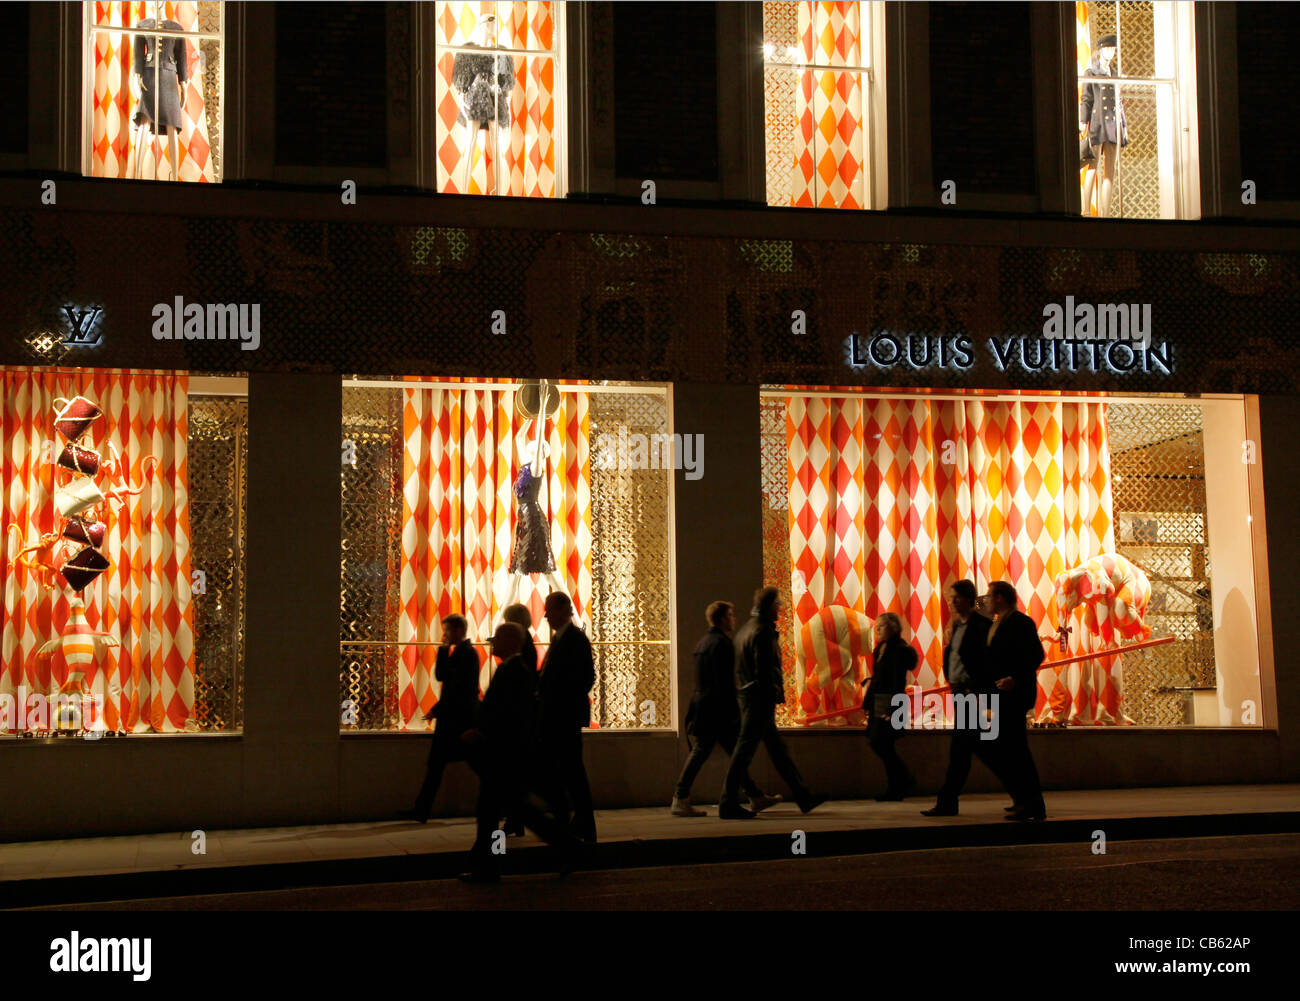 UK.SHOPPERS WALK PAST LOUIS VUITTON WINDOW IN BOND STREET, LONDON Stock Photo